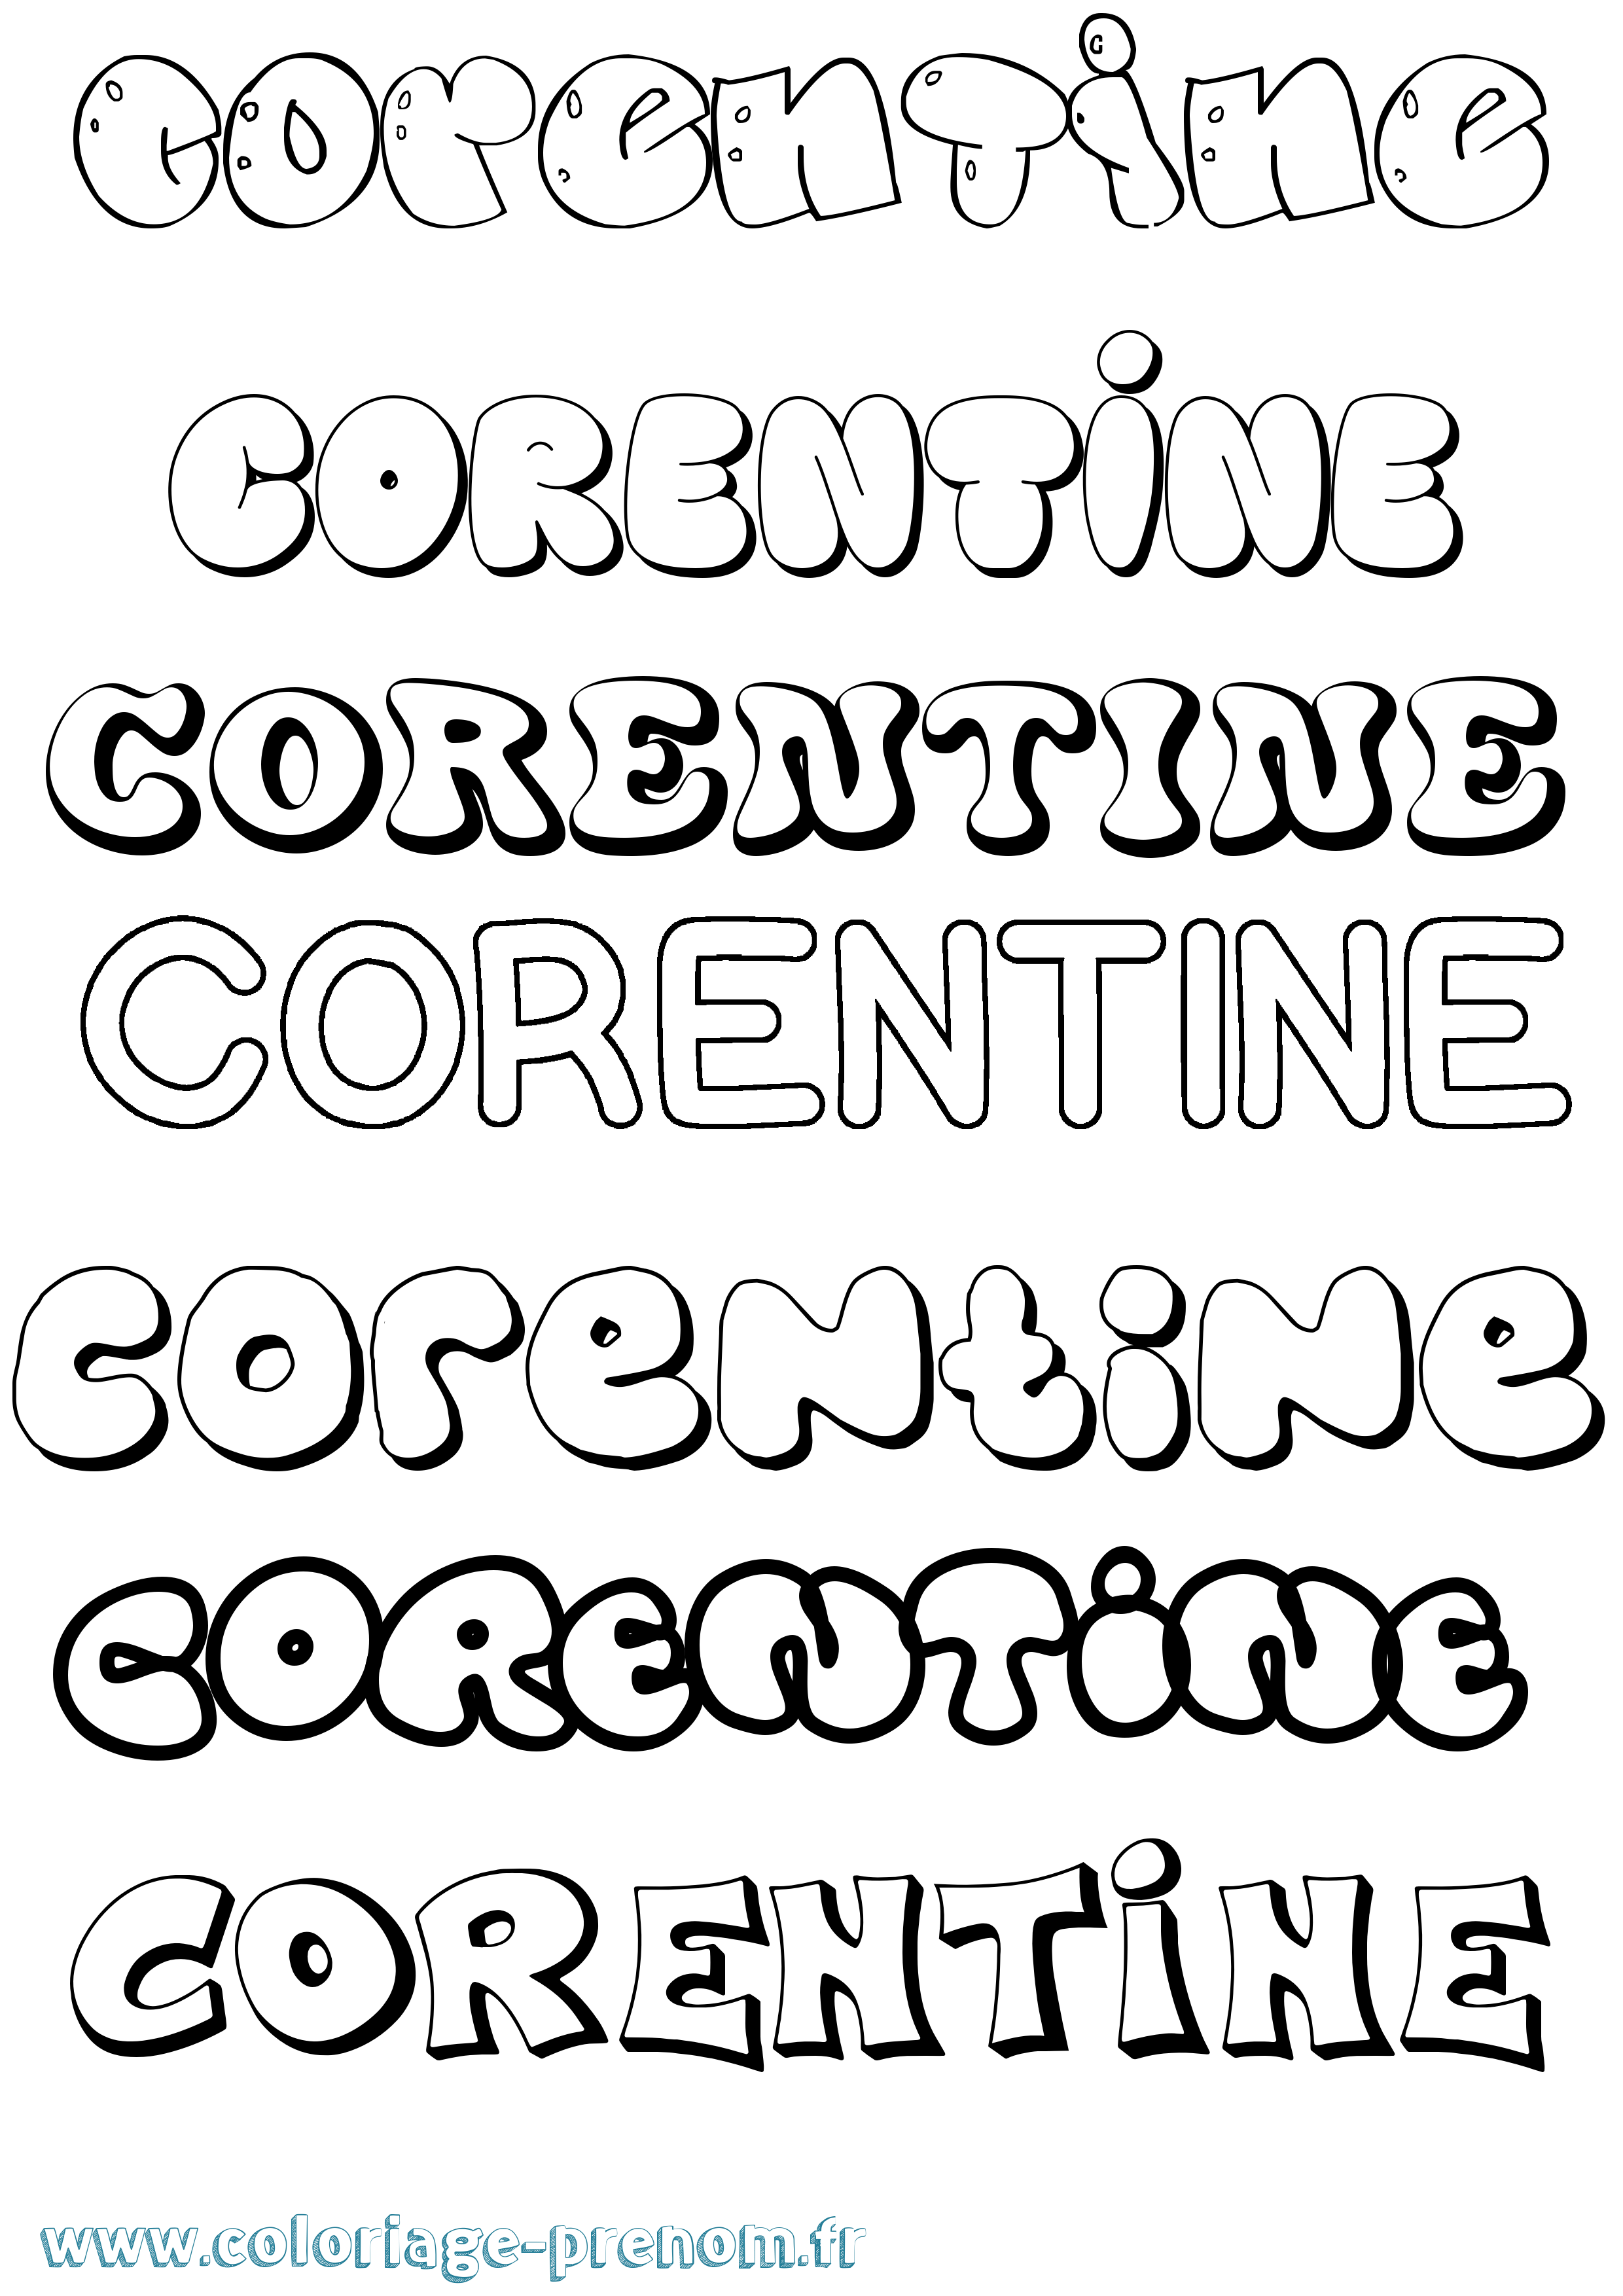 Coloriage prénom Corentine Bubble